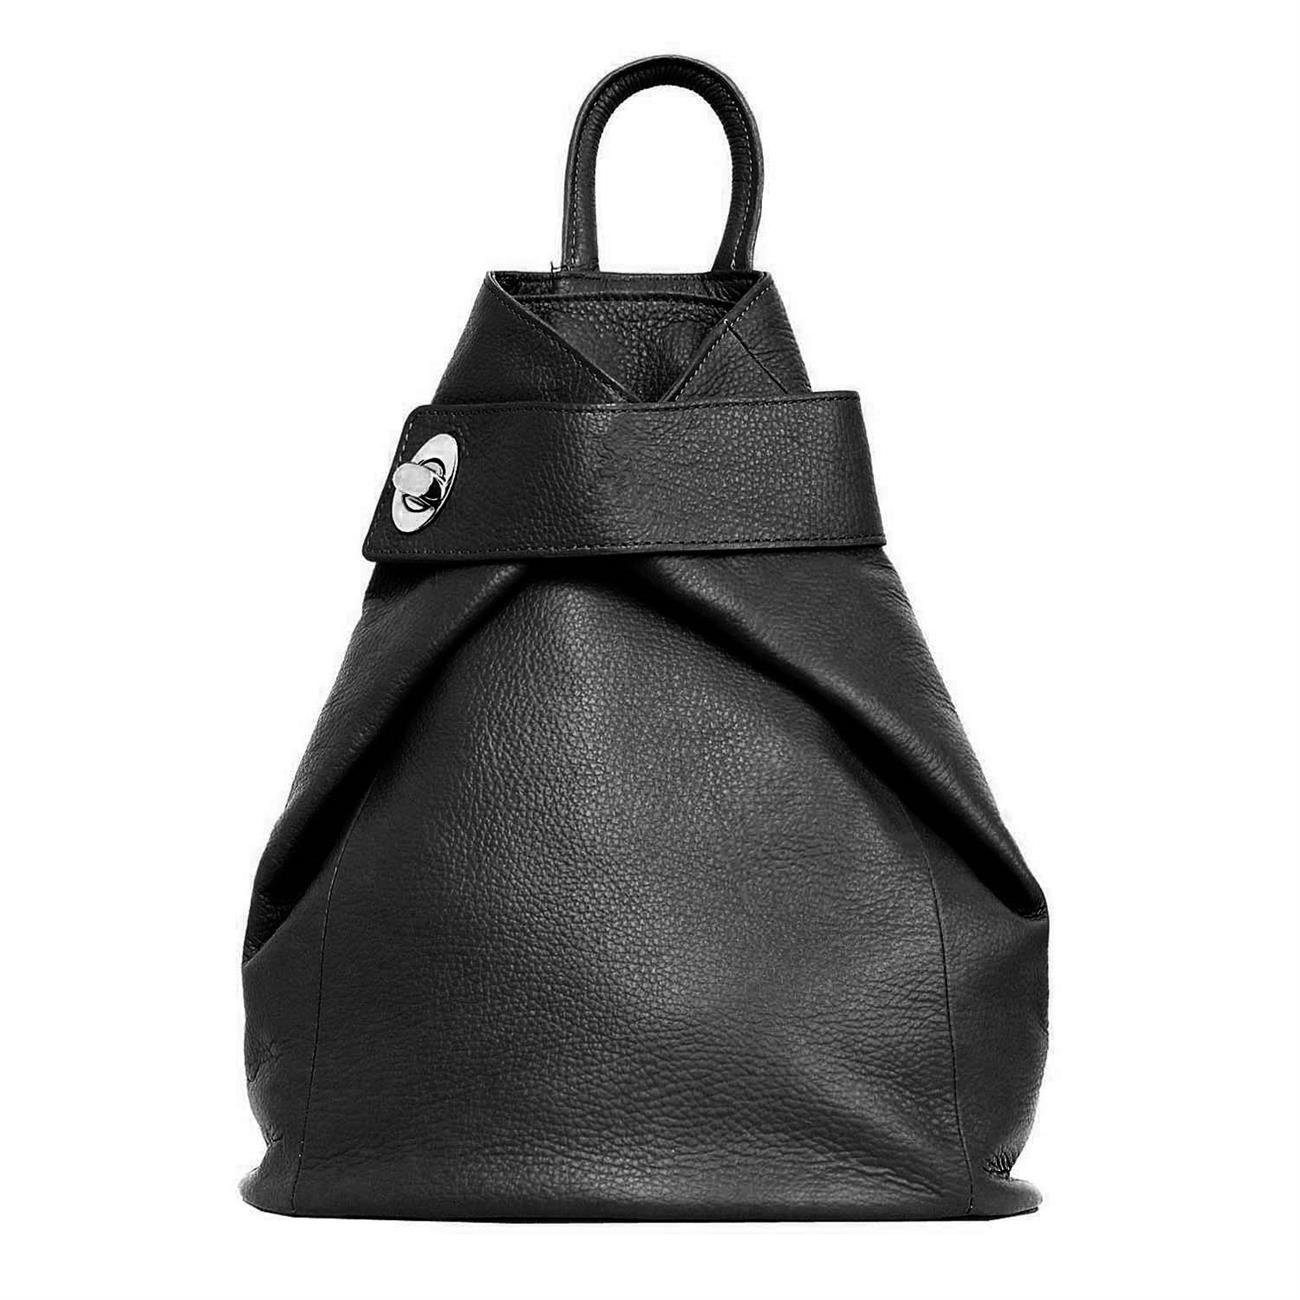 ITALYSHOP24 Rucksack Made in Italy Damen Leder Schultertasche Daypack Freizeitrucksack, Handgepäck